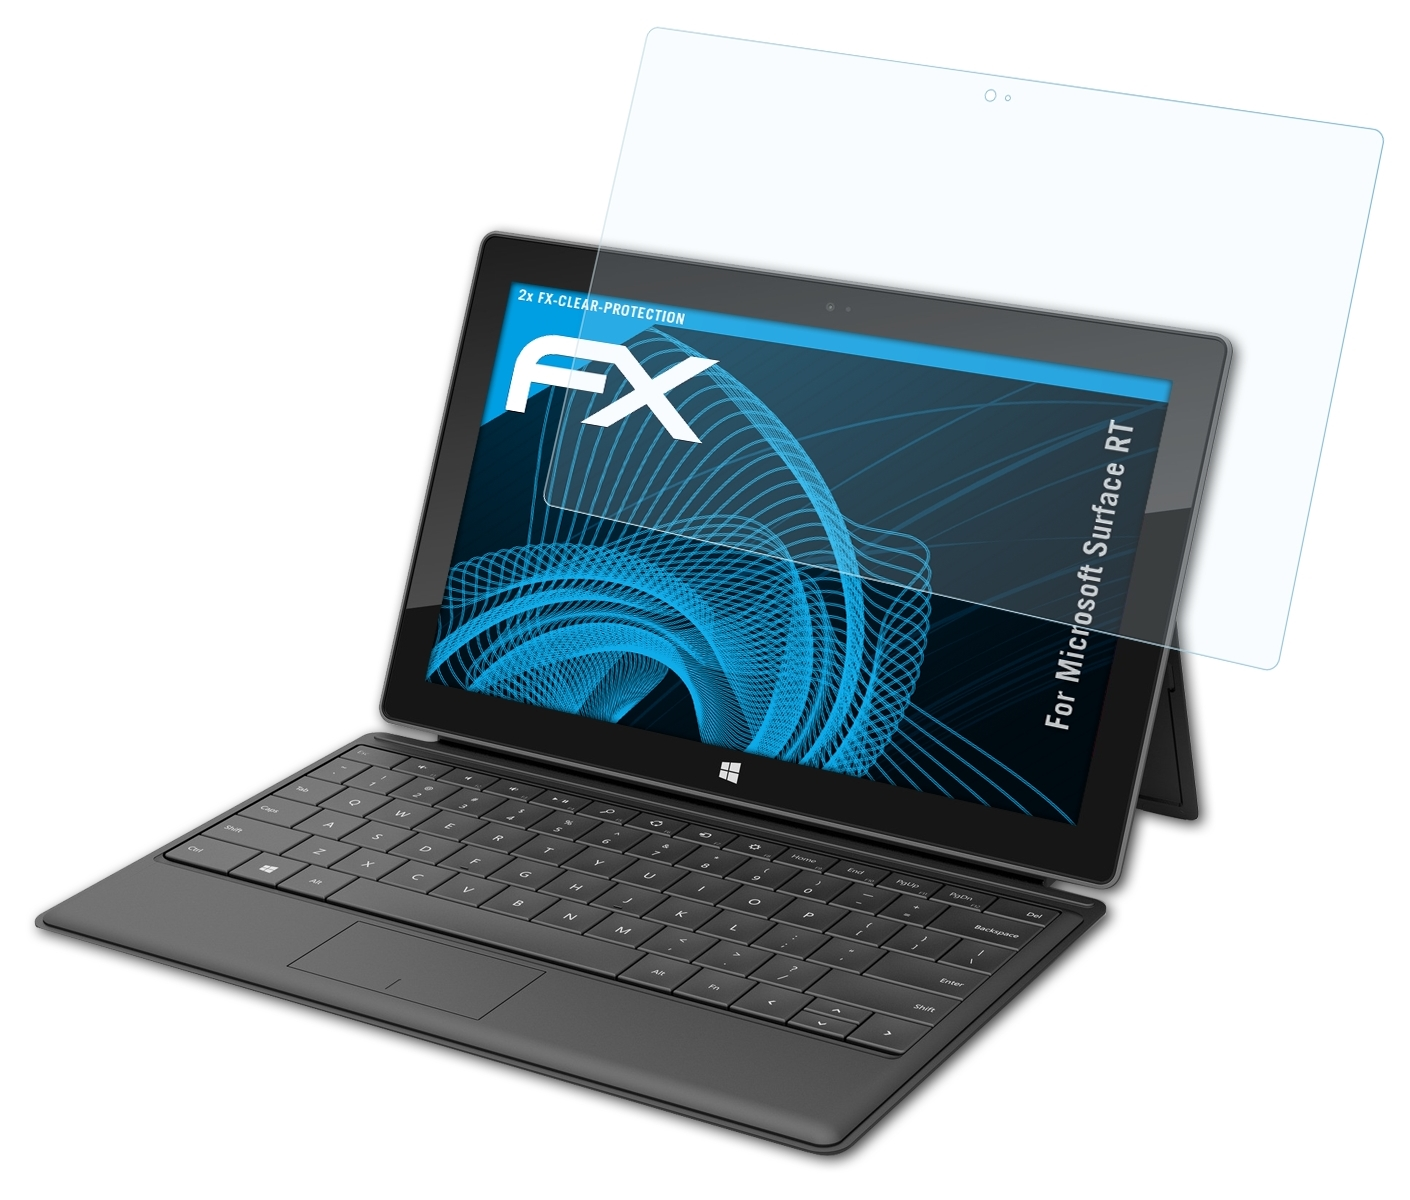 ATFOLIX Surface 2x Microsoft FX-Clear Displayschutz(für RT)